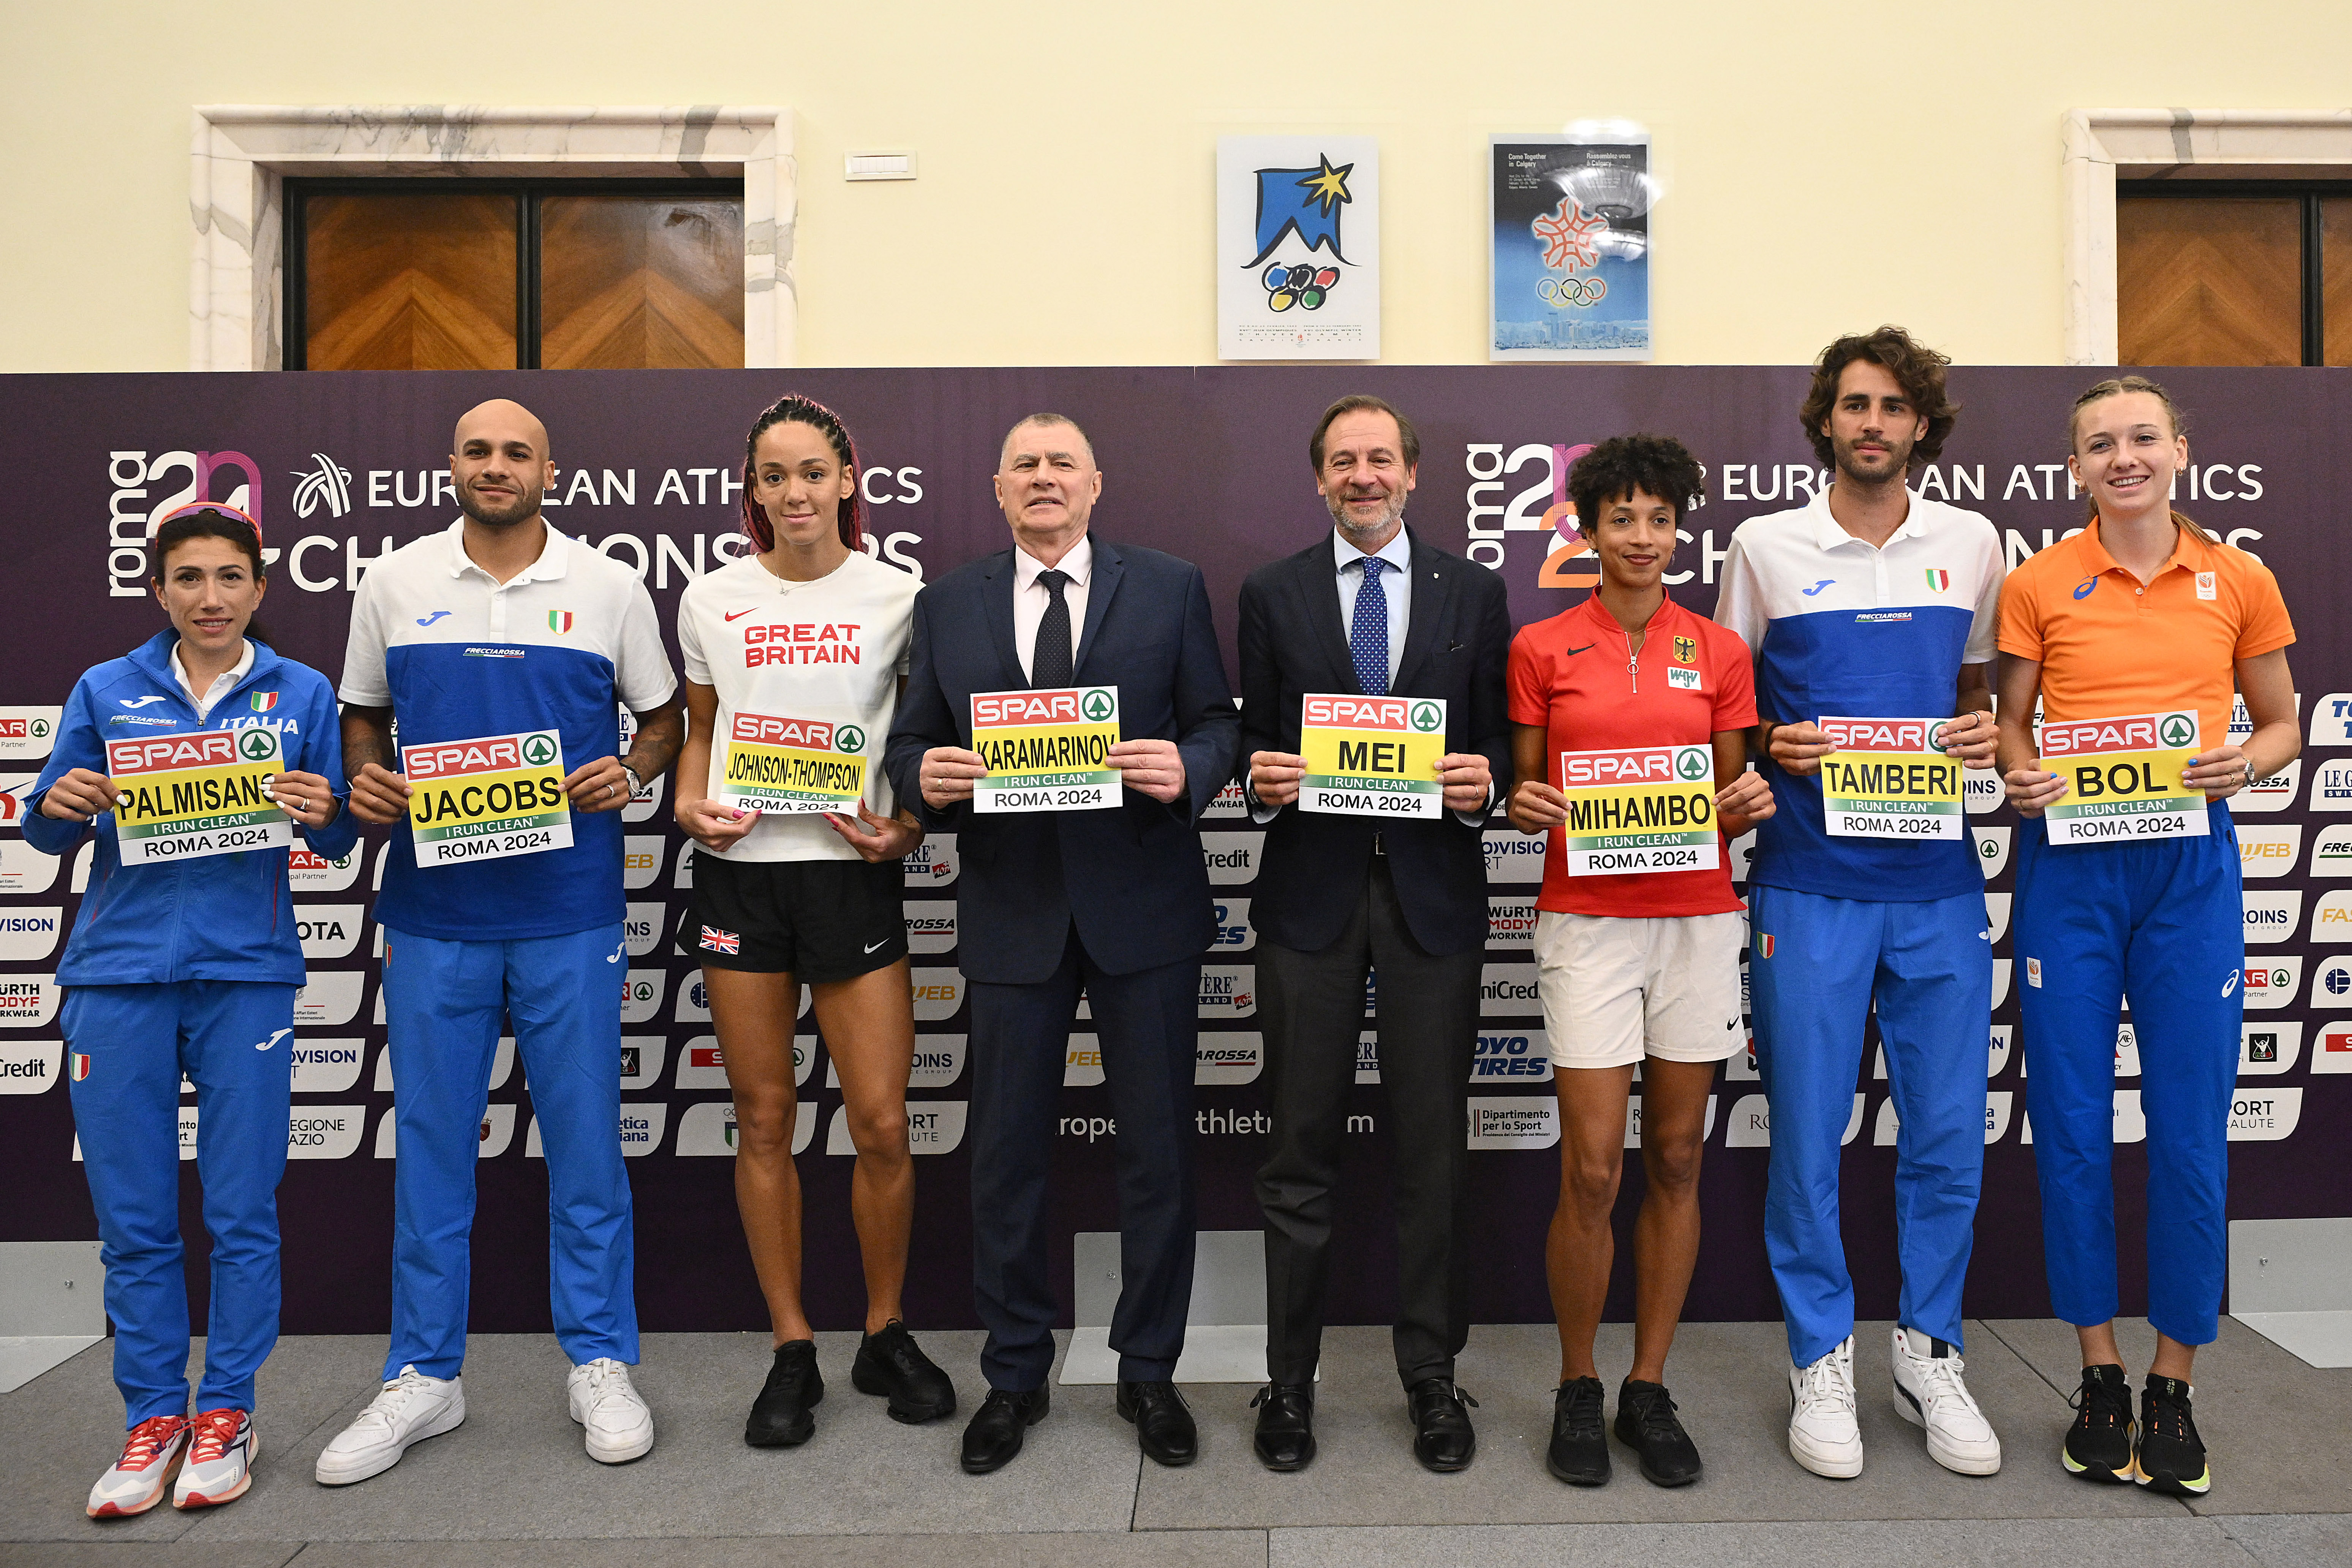 Domani iniziano gli Europei di Atletica Roma 2024: oltre 1600 atleti in gara per sei giorni al Foro Italico